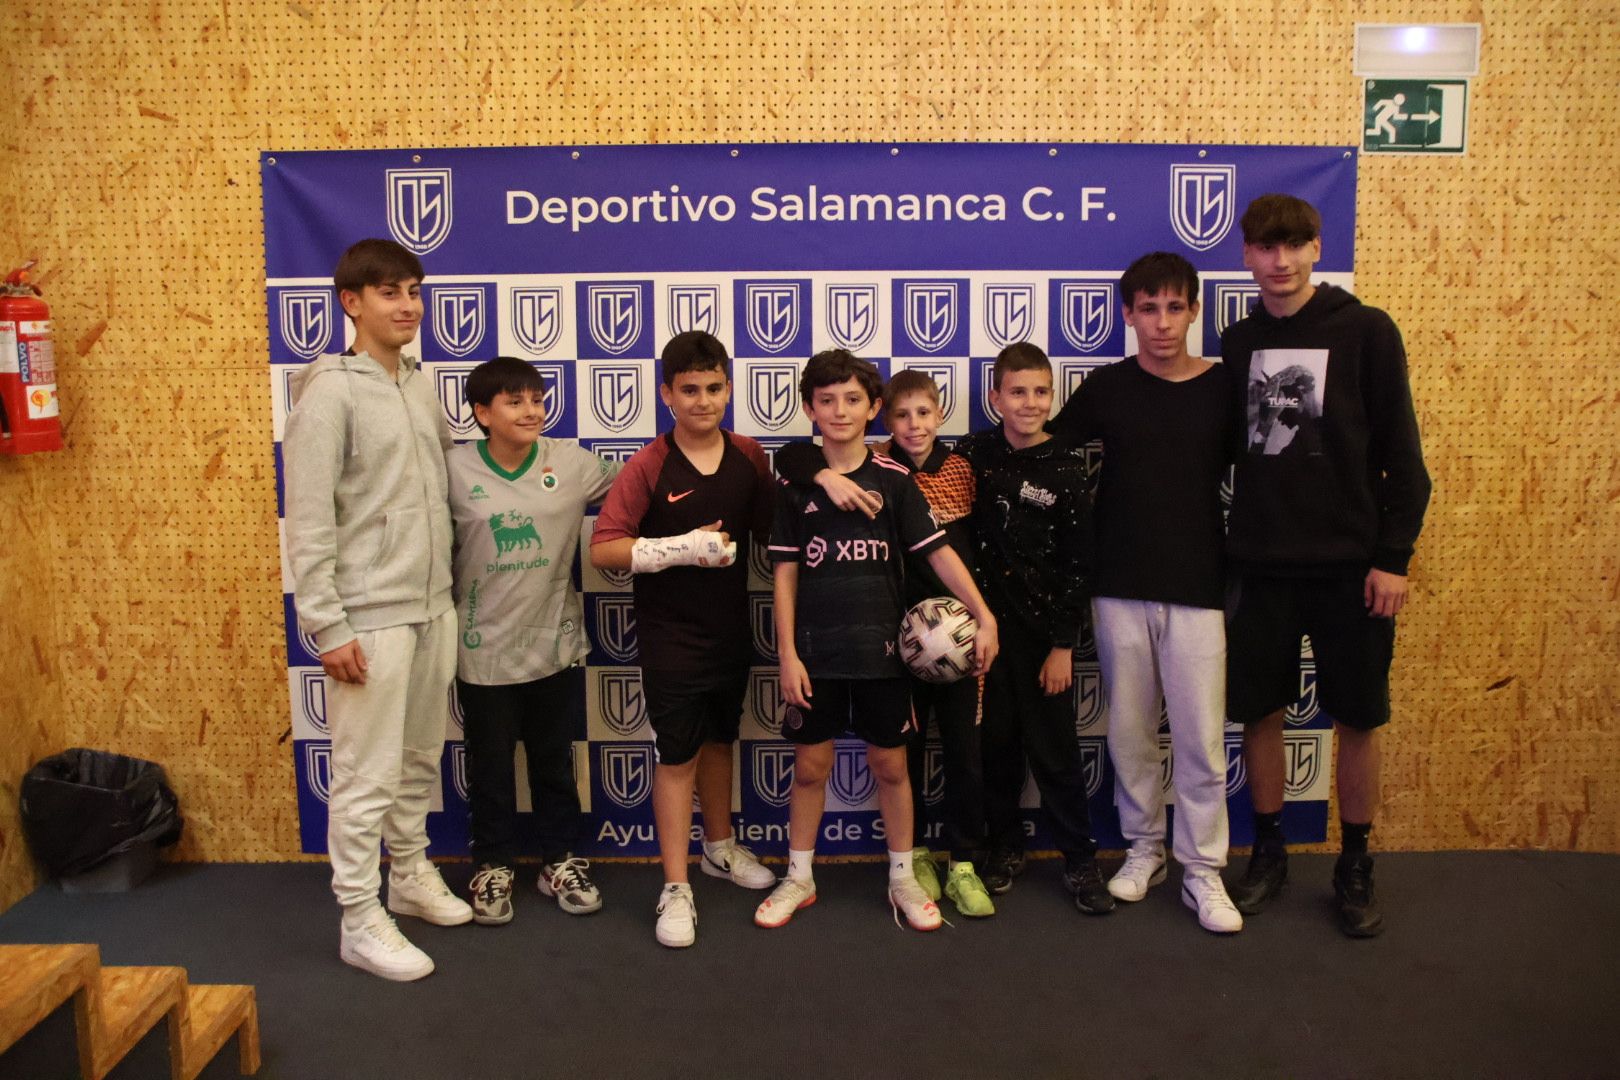 Presentación del Deportivo Salamanca CF